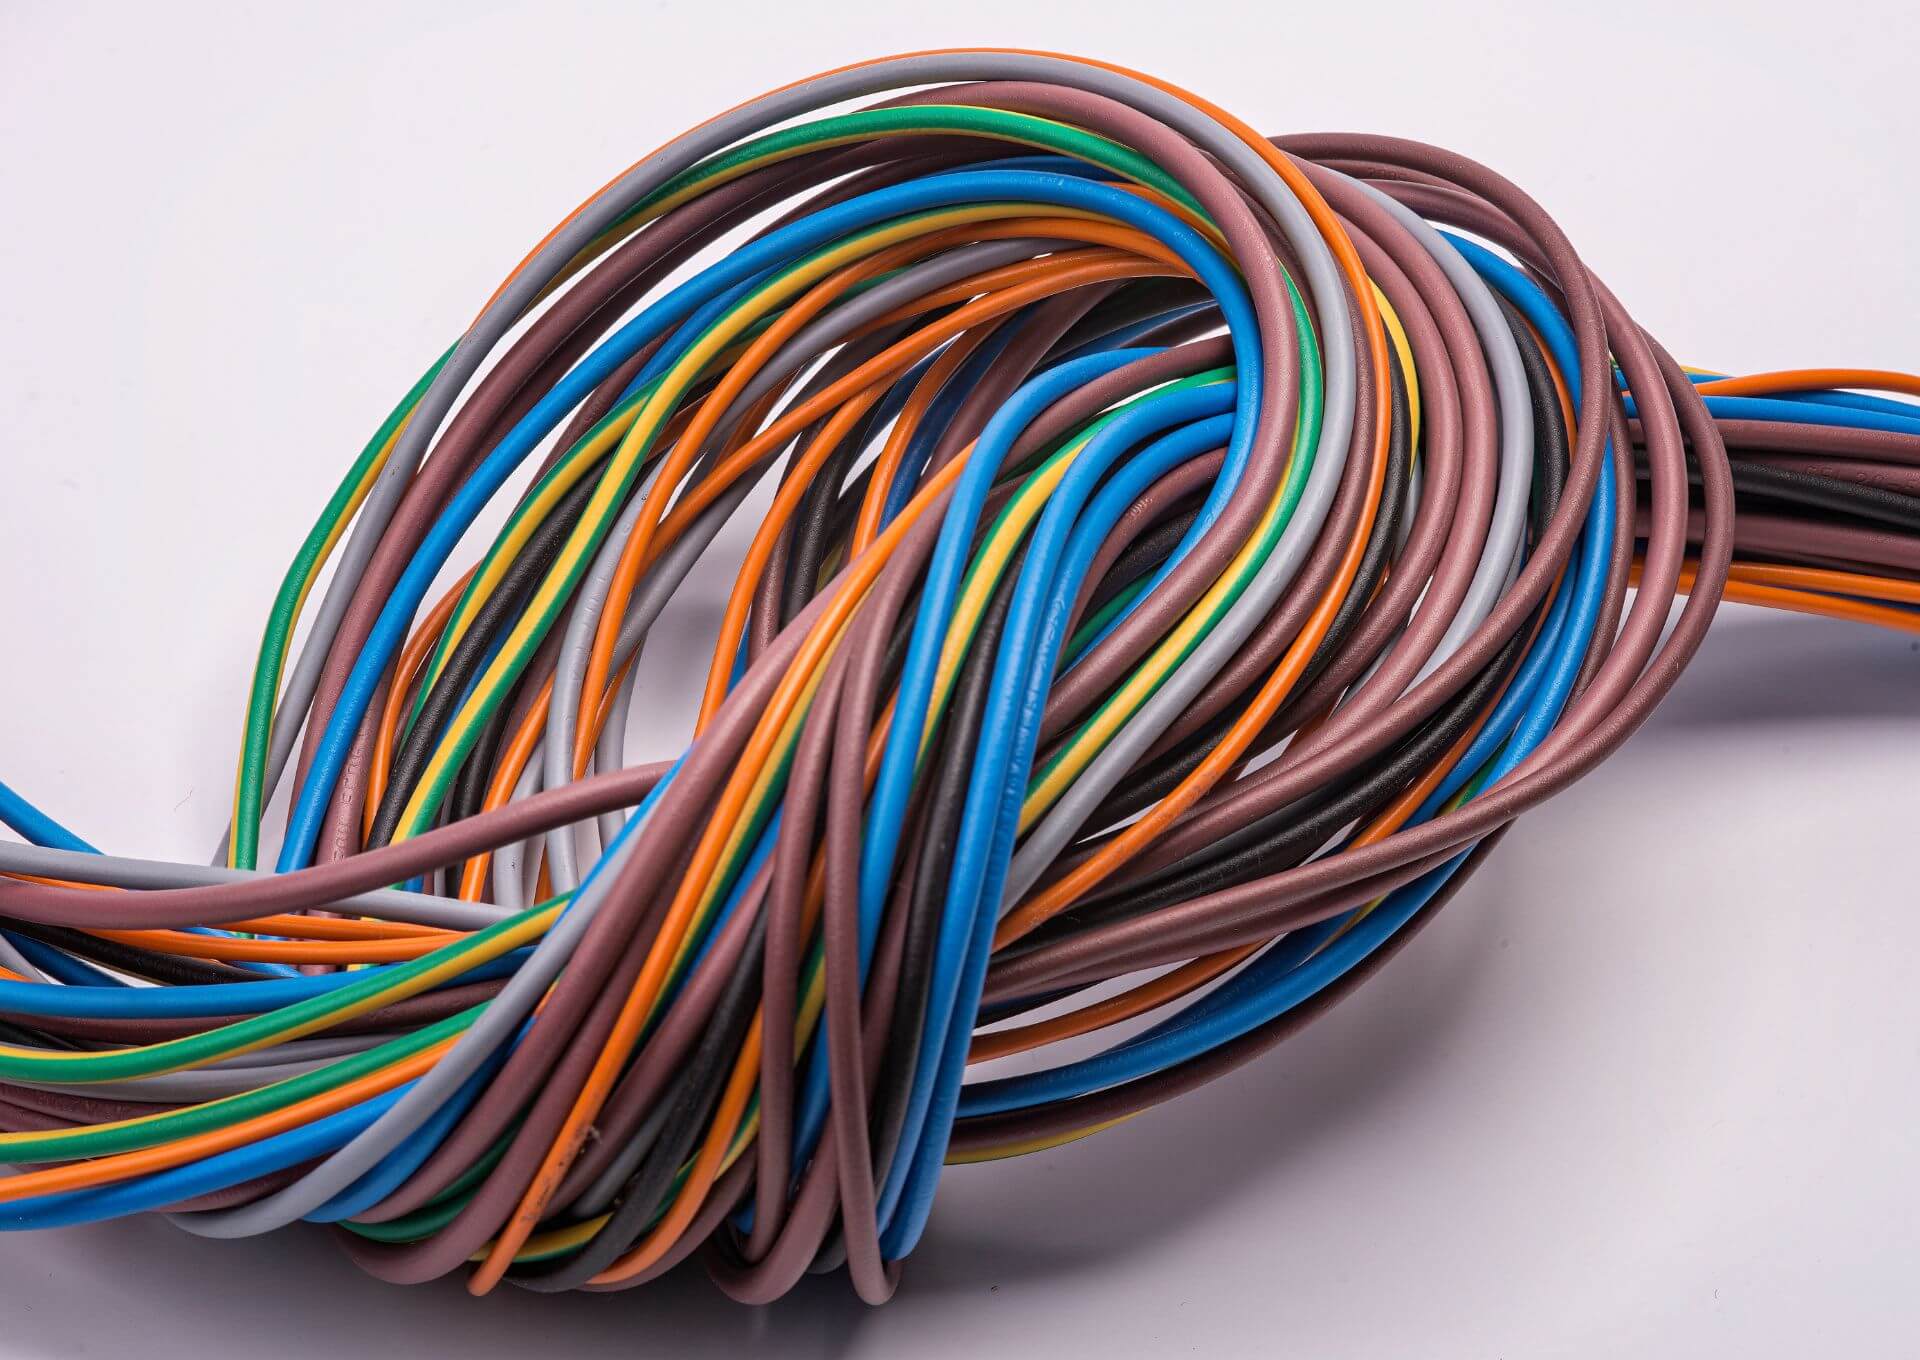 Zastosowanie klipsów kablowych w instalacjach i budownictwie